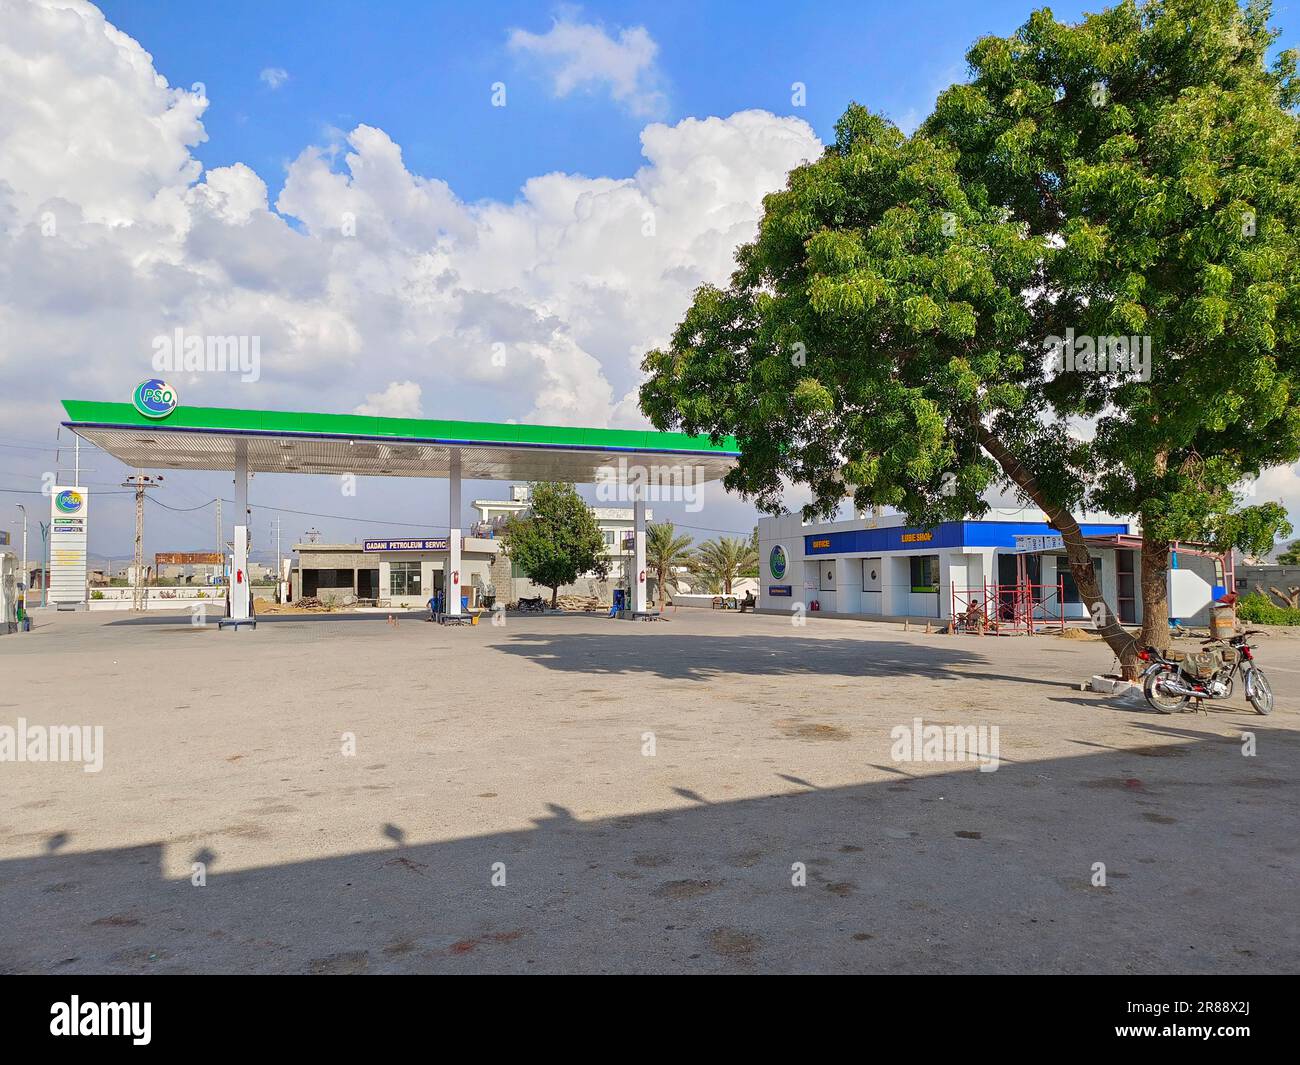 PSO petrol pump at Gawader coastal highway Stock Photo